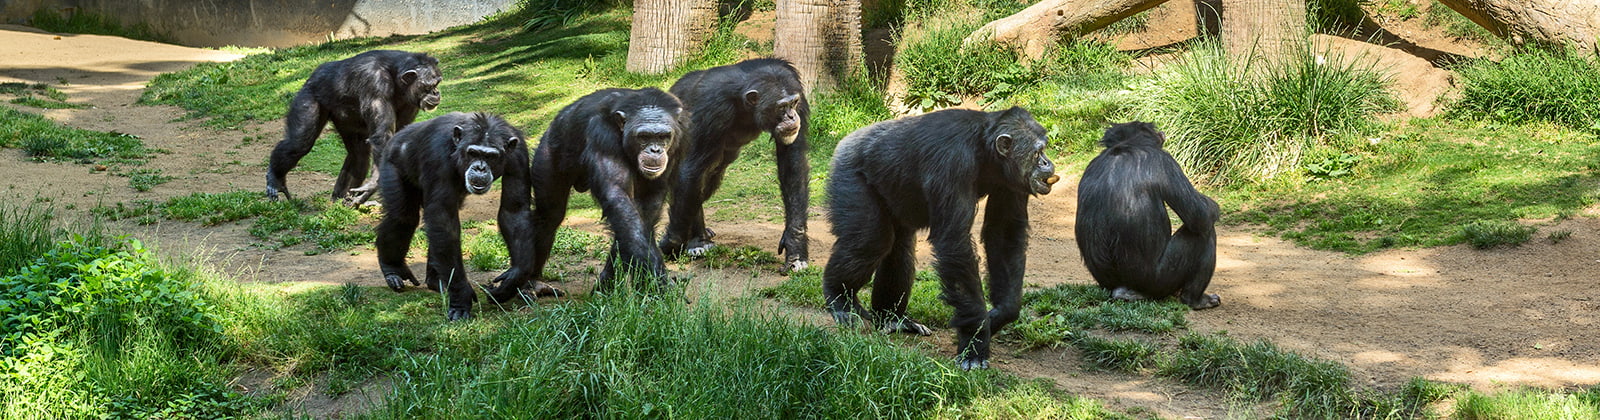 Chimpanzees walking